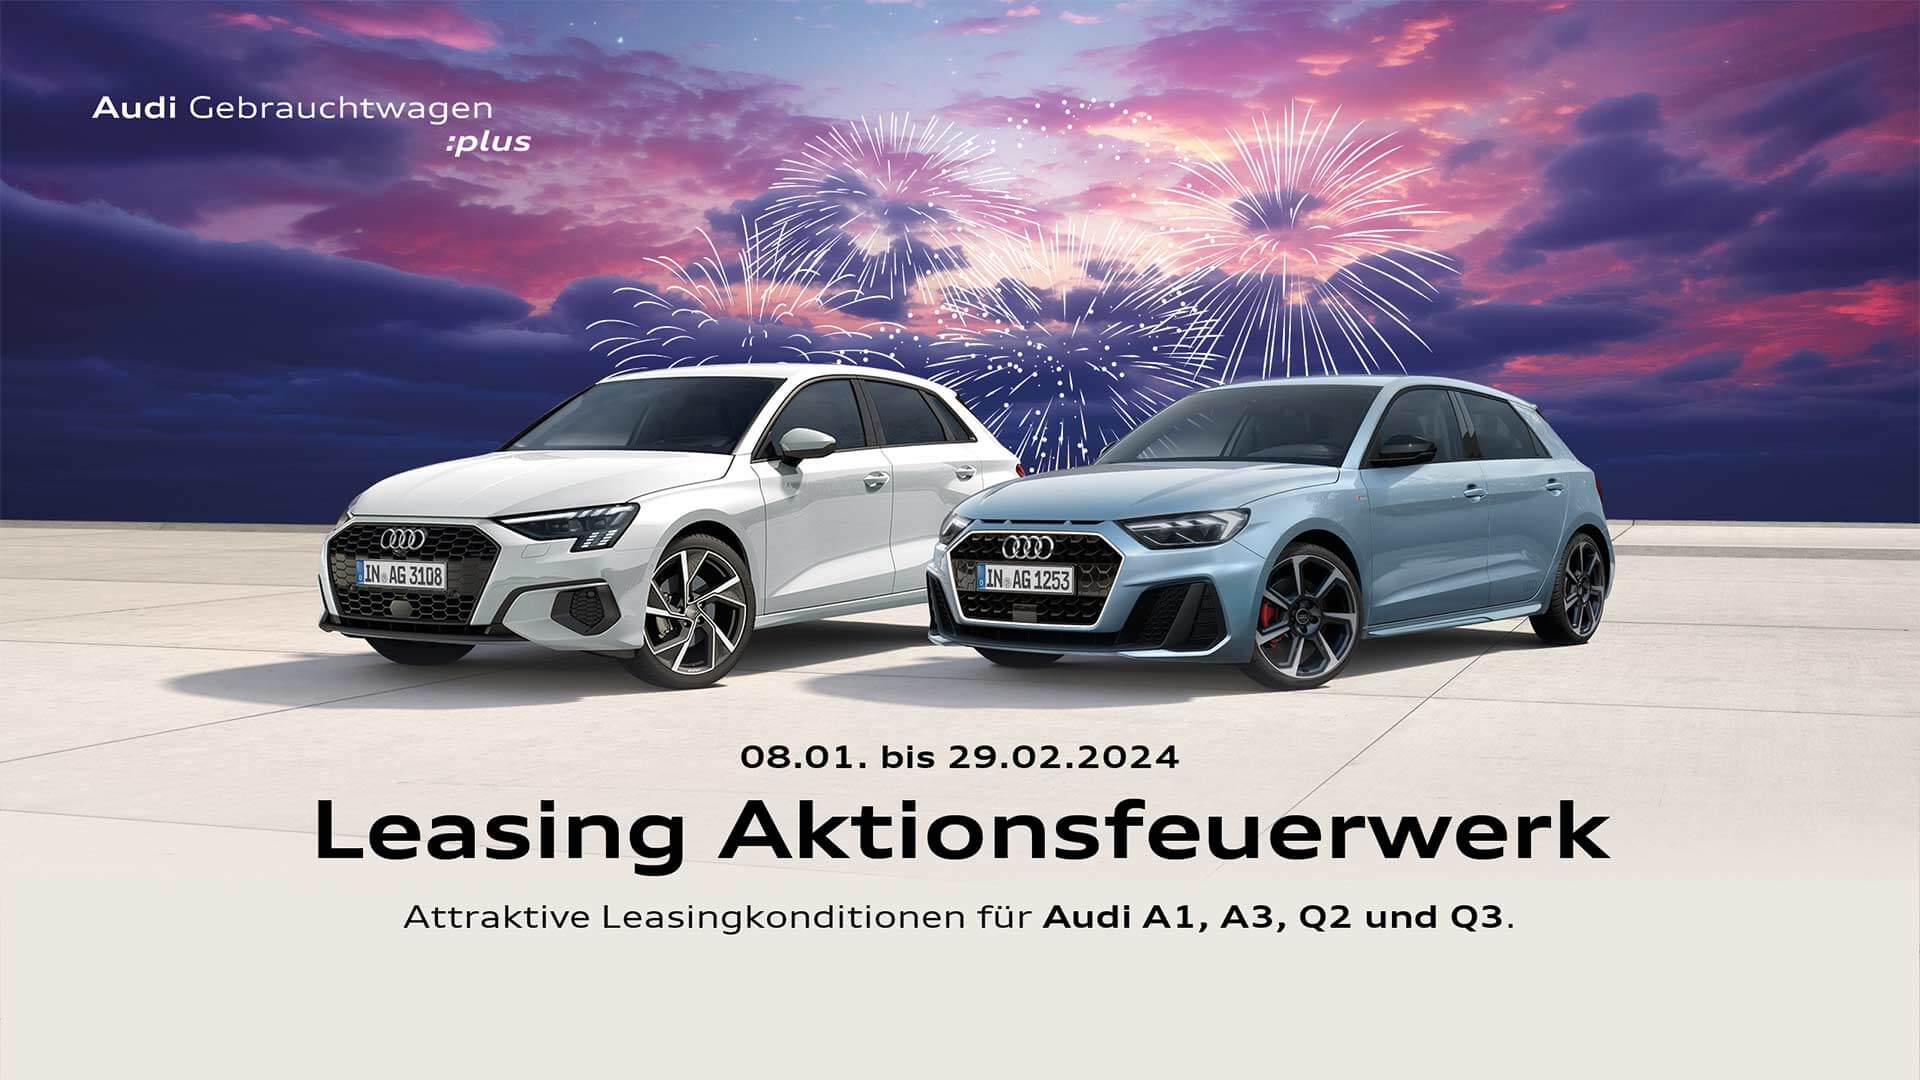 Audi Gebrauchtwagen im Aktionsleasing